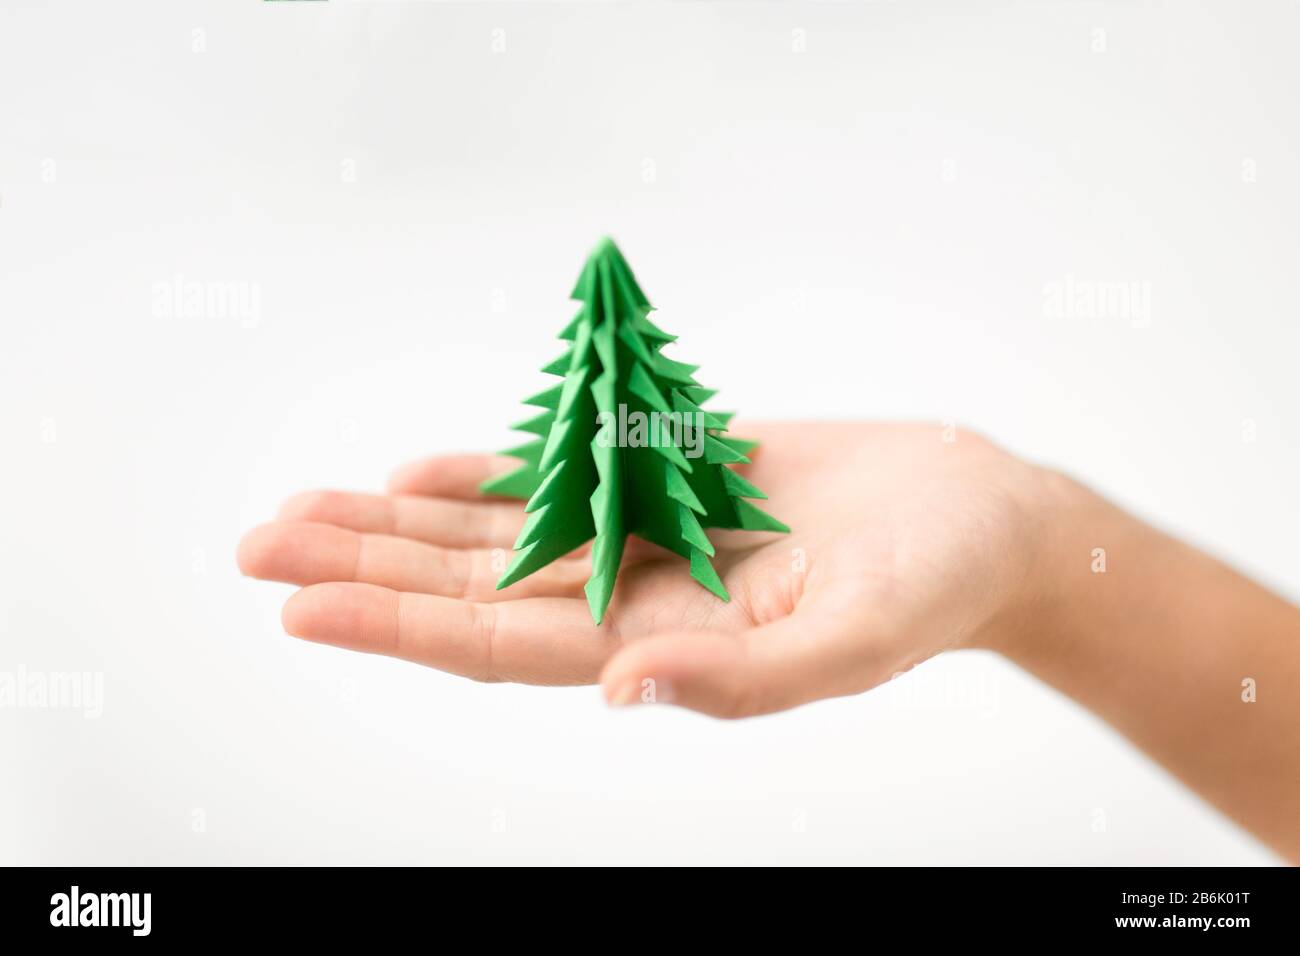 vacances d'hiver, nouvelle année et concept d'artisanat - main tenant le papier vert origami arbre de noël Banque D'Images